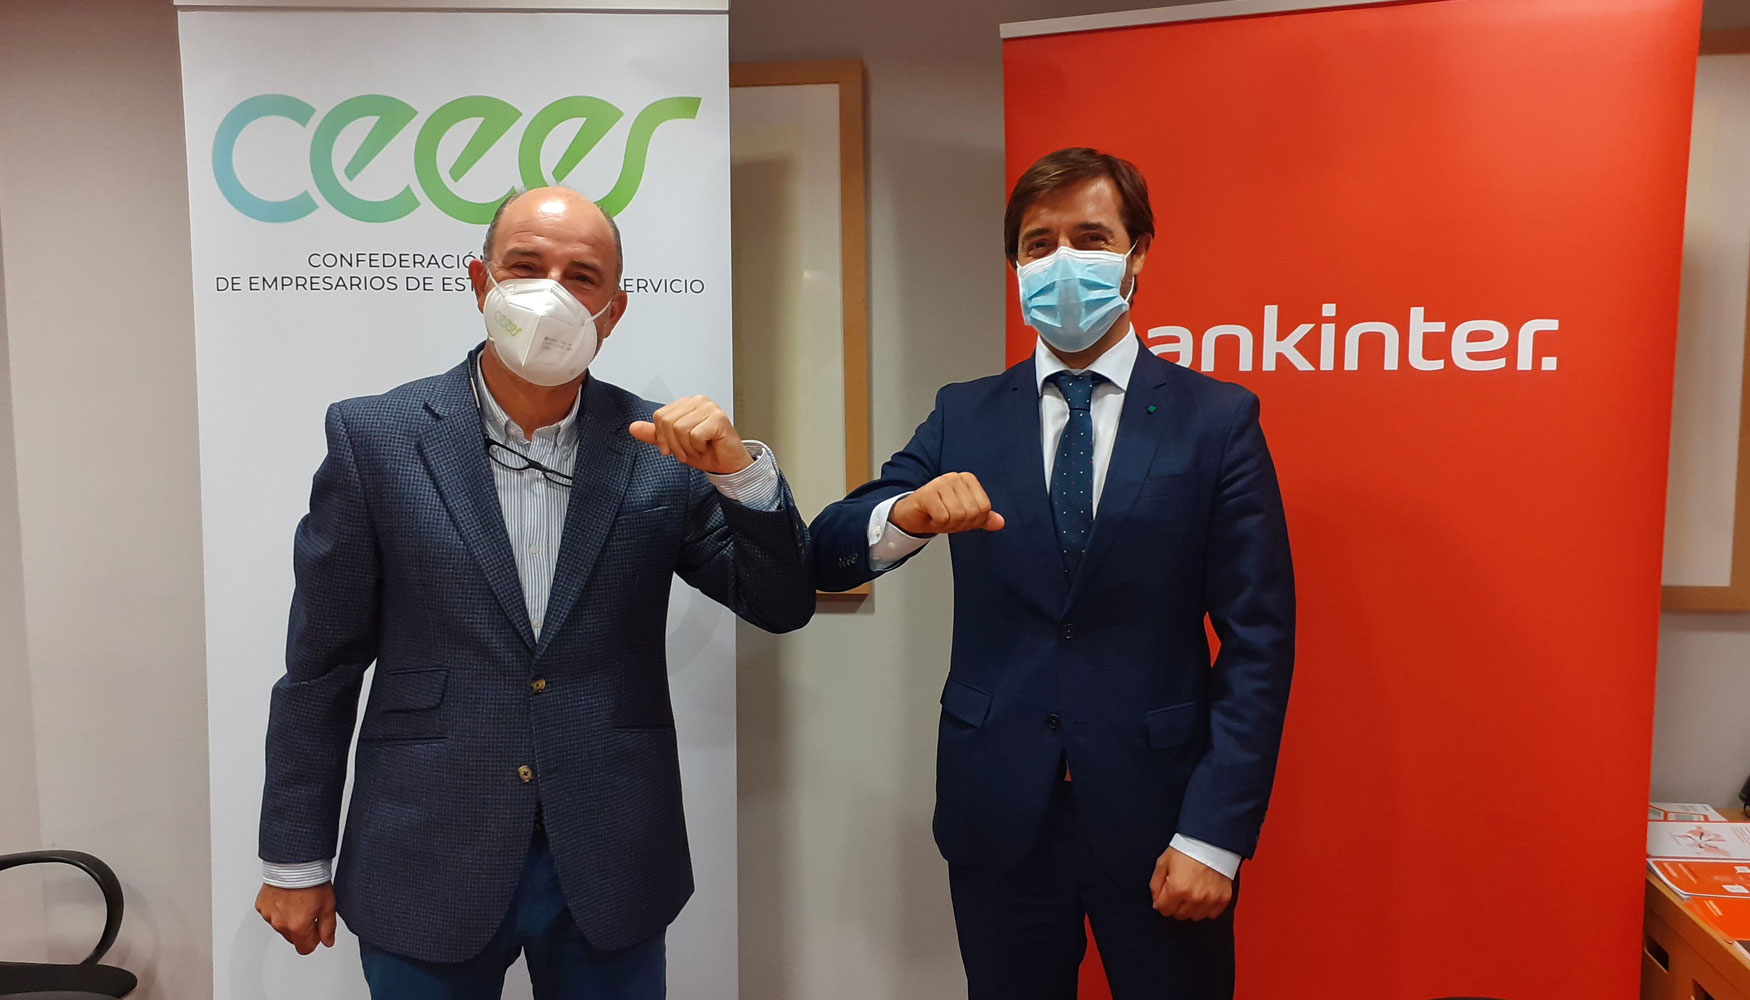 El presidente de CEEES, Jorge de Benito, y el director comercial de Empresas de la Organizacin Norte de Bankinter, Luis Manuel Espeso...